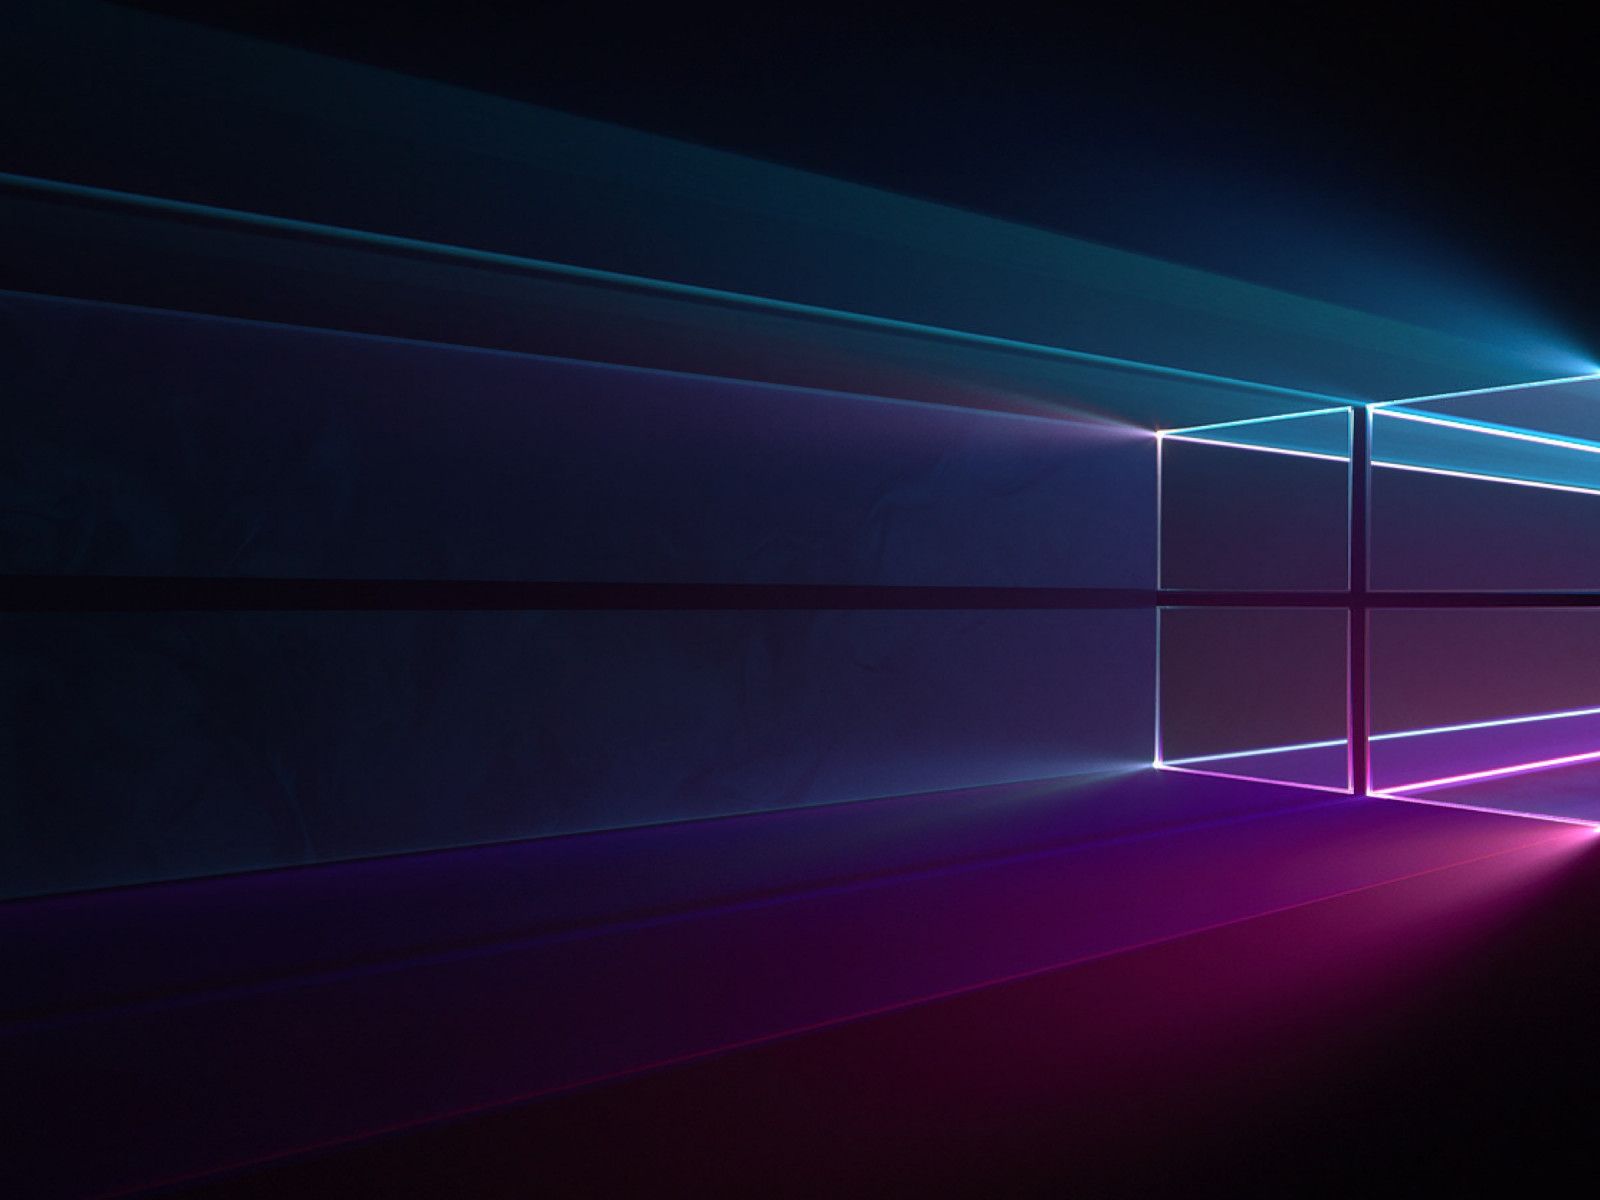 Windows 10 Purple Gradient Wallpaper Hd Minimalist 4k